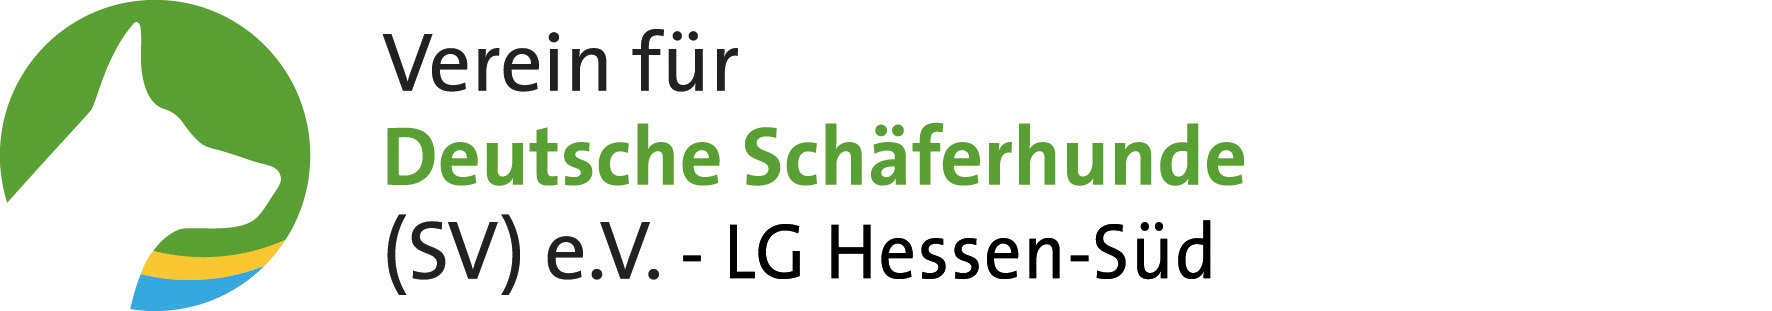 Verein für Deutsche Schäferhunde (SV) e. V.